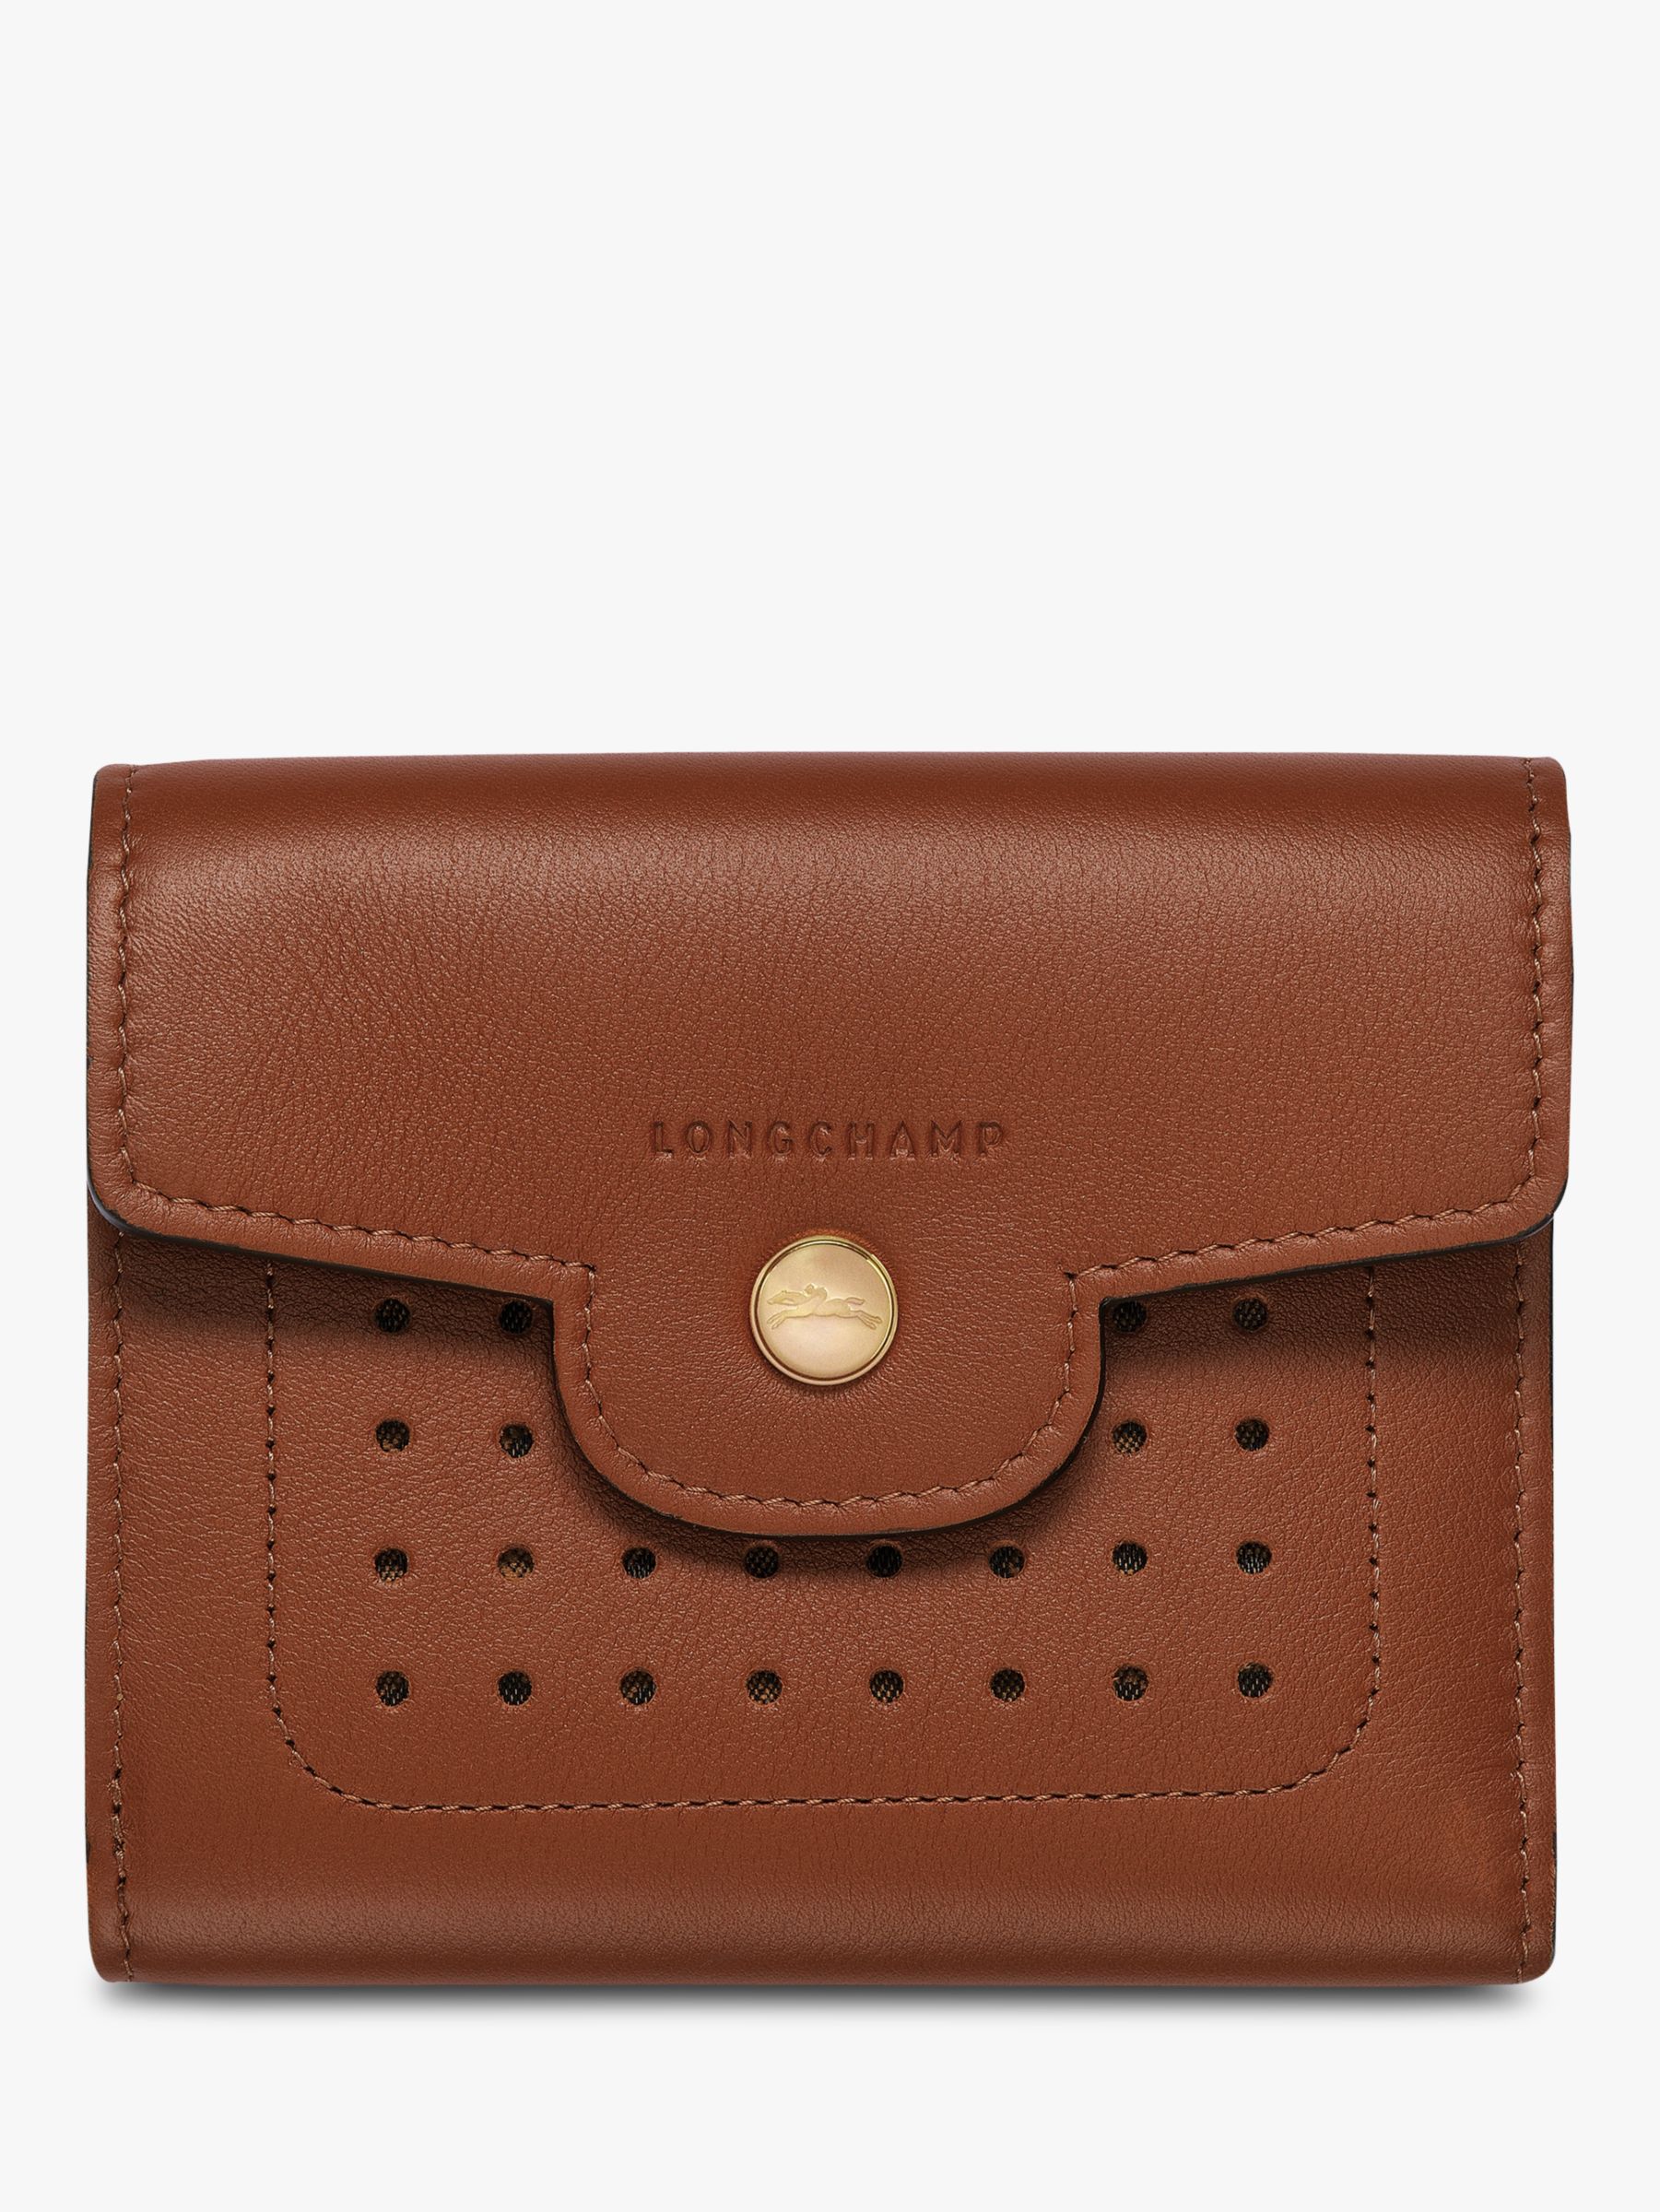 Longchamp Mademoiselle Longchamp Leather Compact Wallet